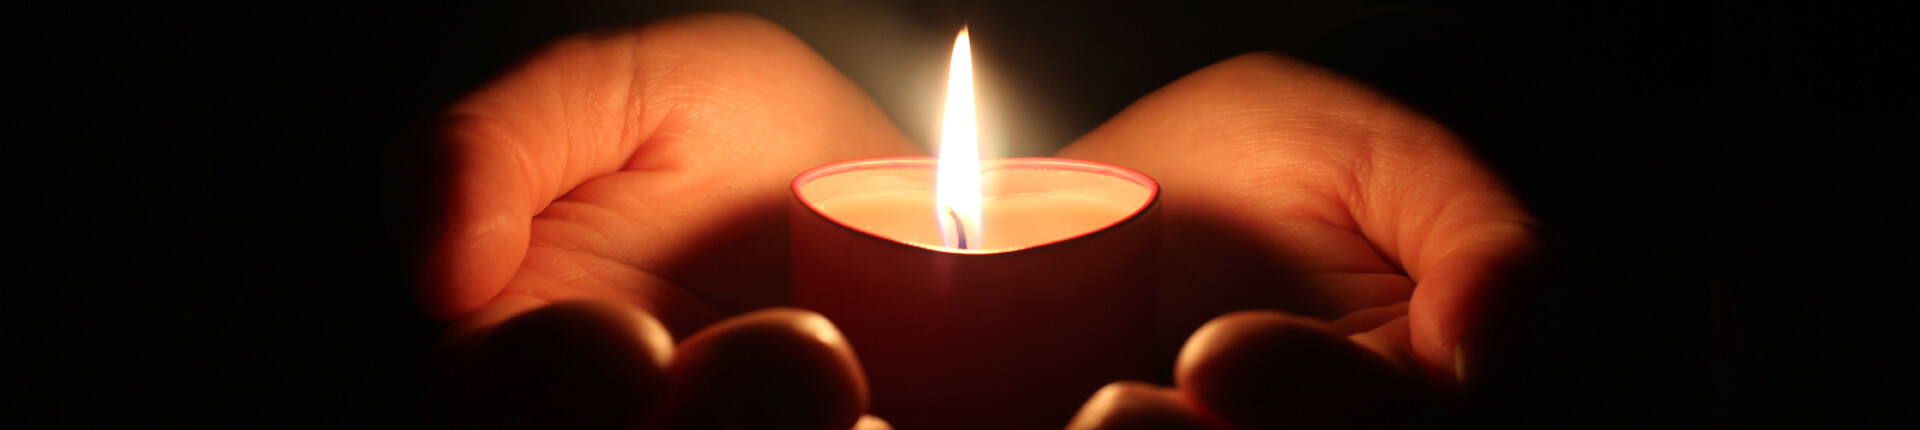 Hand holding candle in memorium